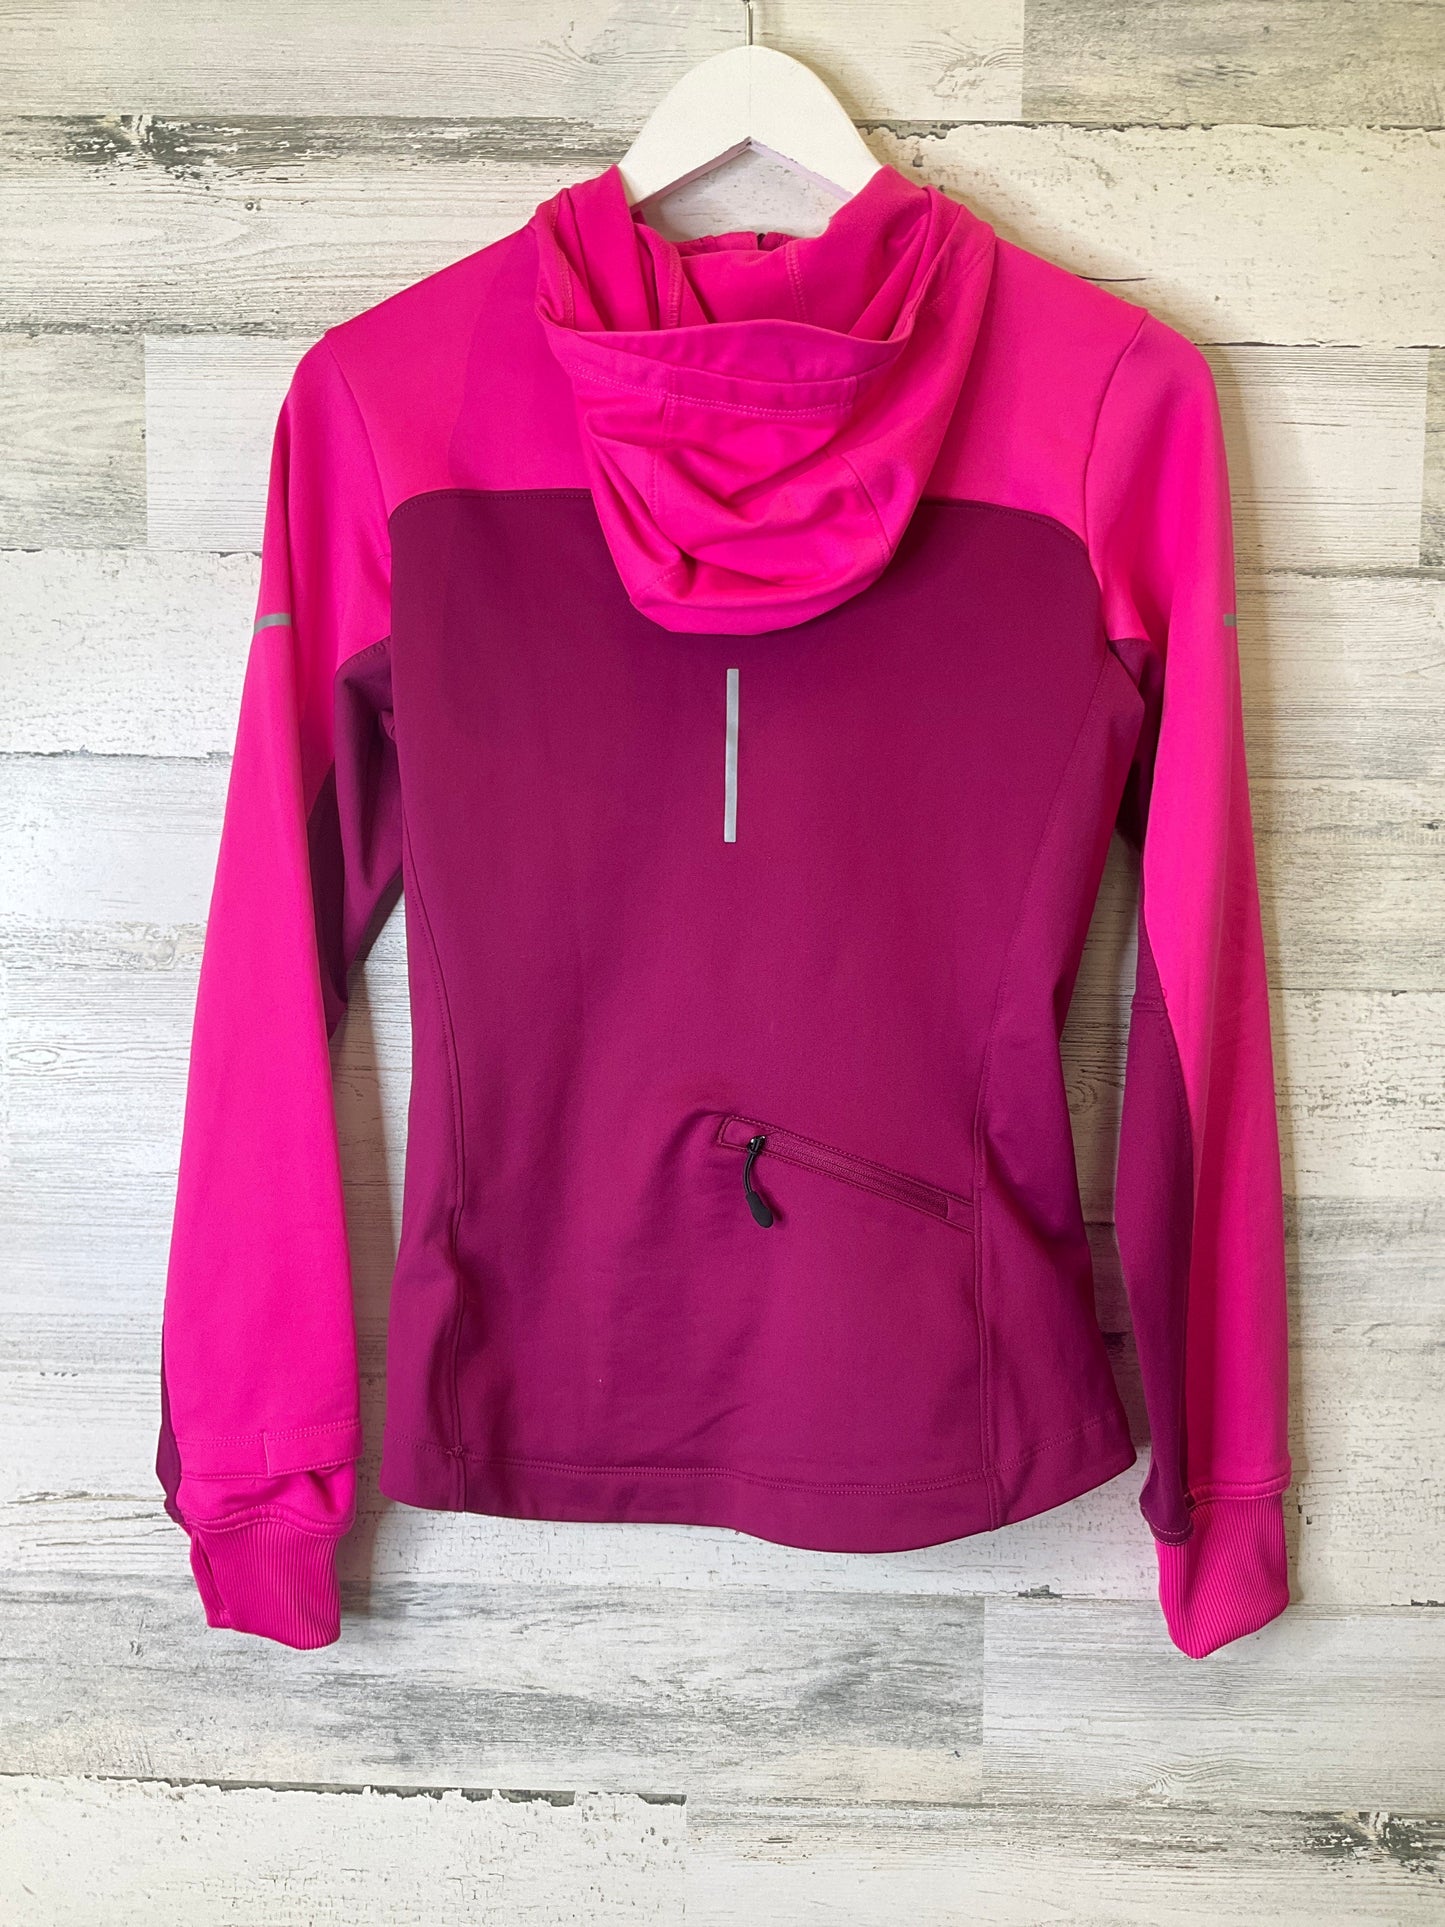 Pink Athletic Sweatshirt Hoodie Nike, Size S